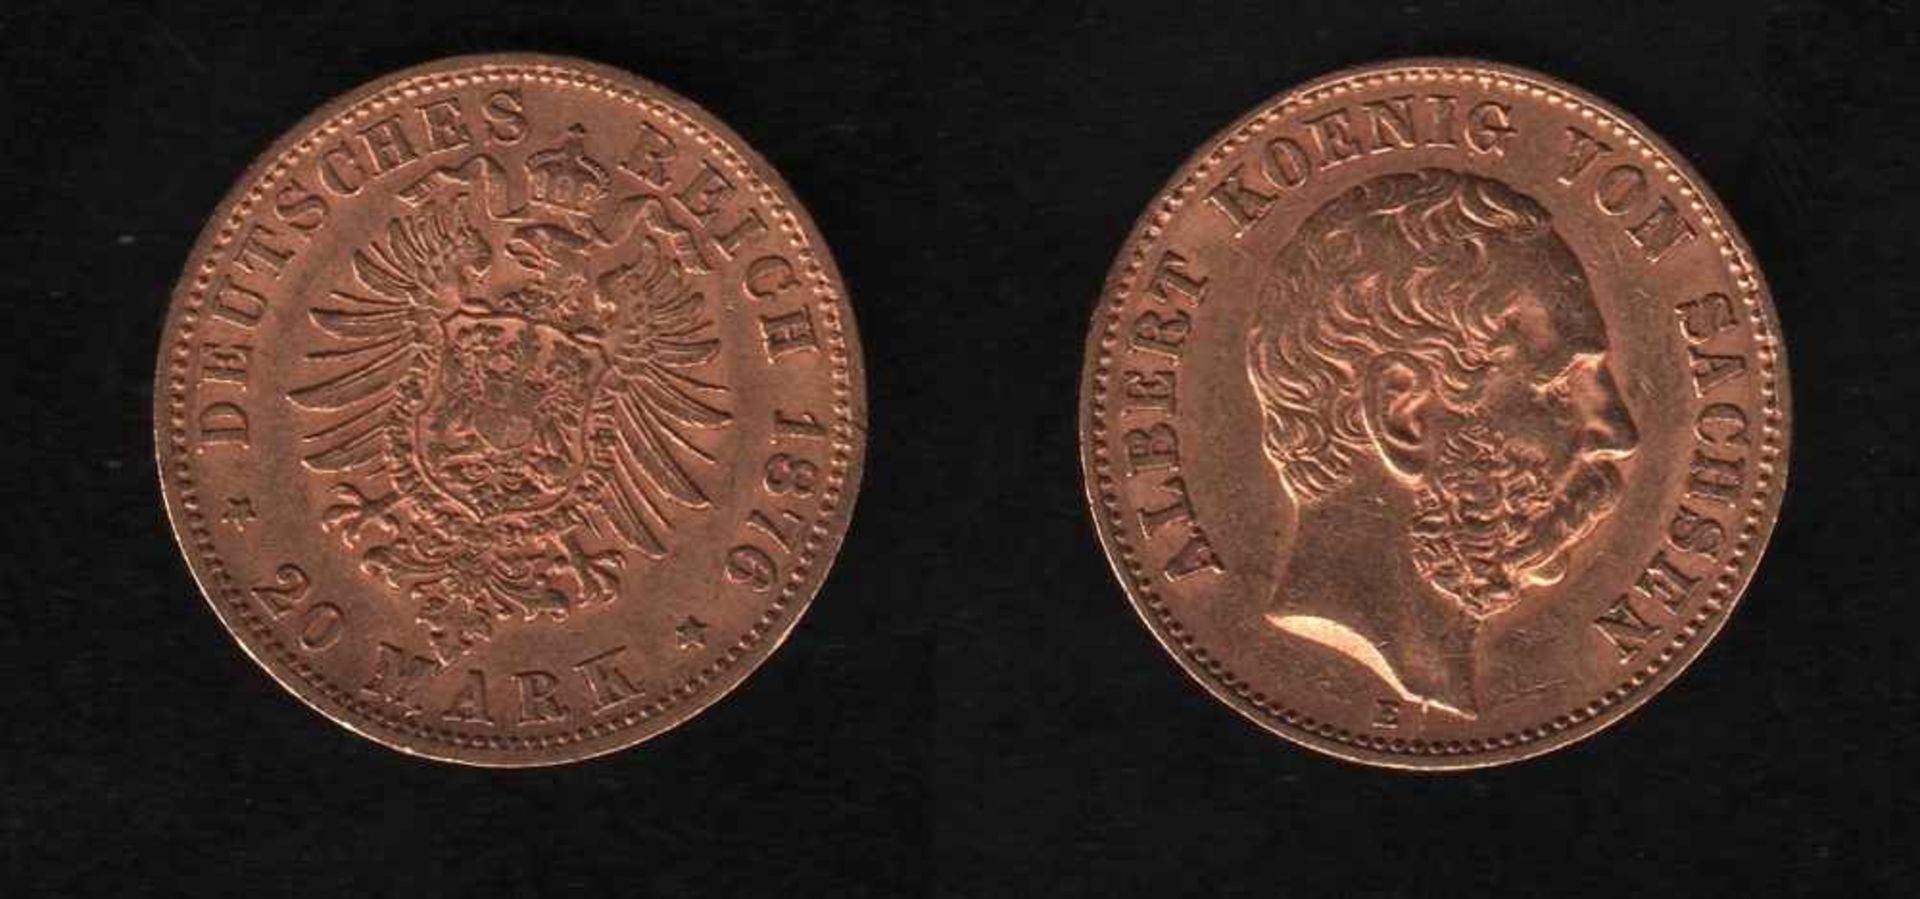 Deutsches Reich. Goldmünze.20 Mark. Albert, König von Sachsen. E 1876. Vorderseite: Porträt König